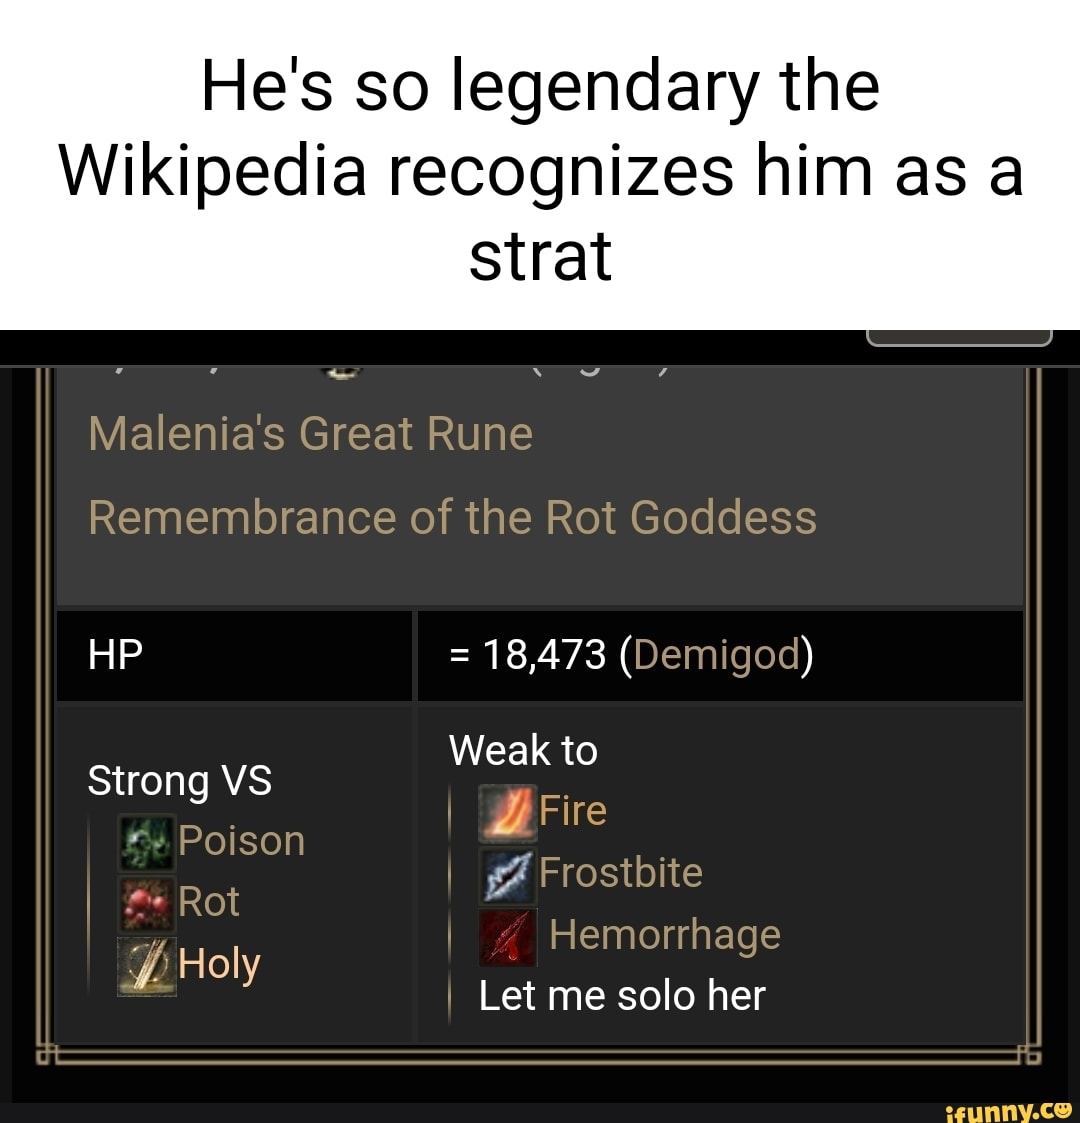 V-me - Wikipedia